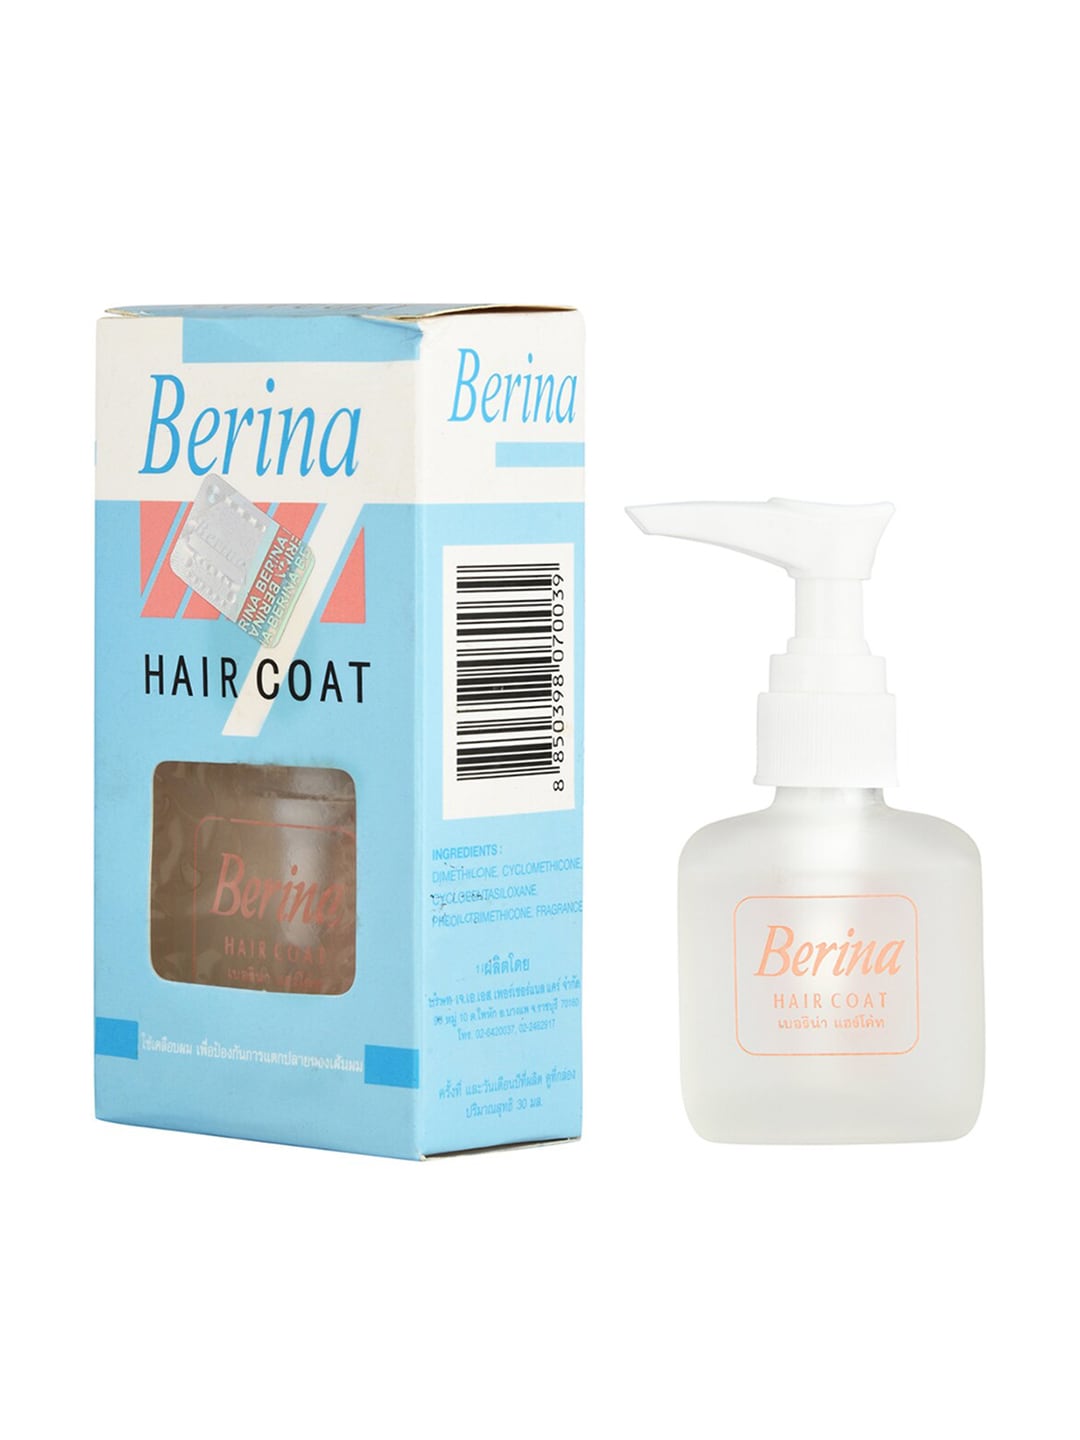 Berina Transparent Hair Coat Serum 30 ml Price in India